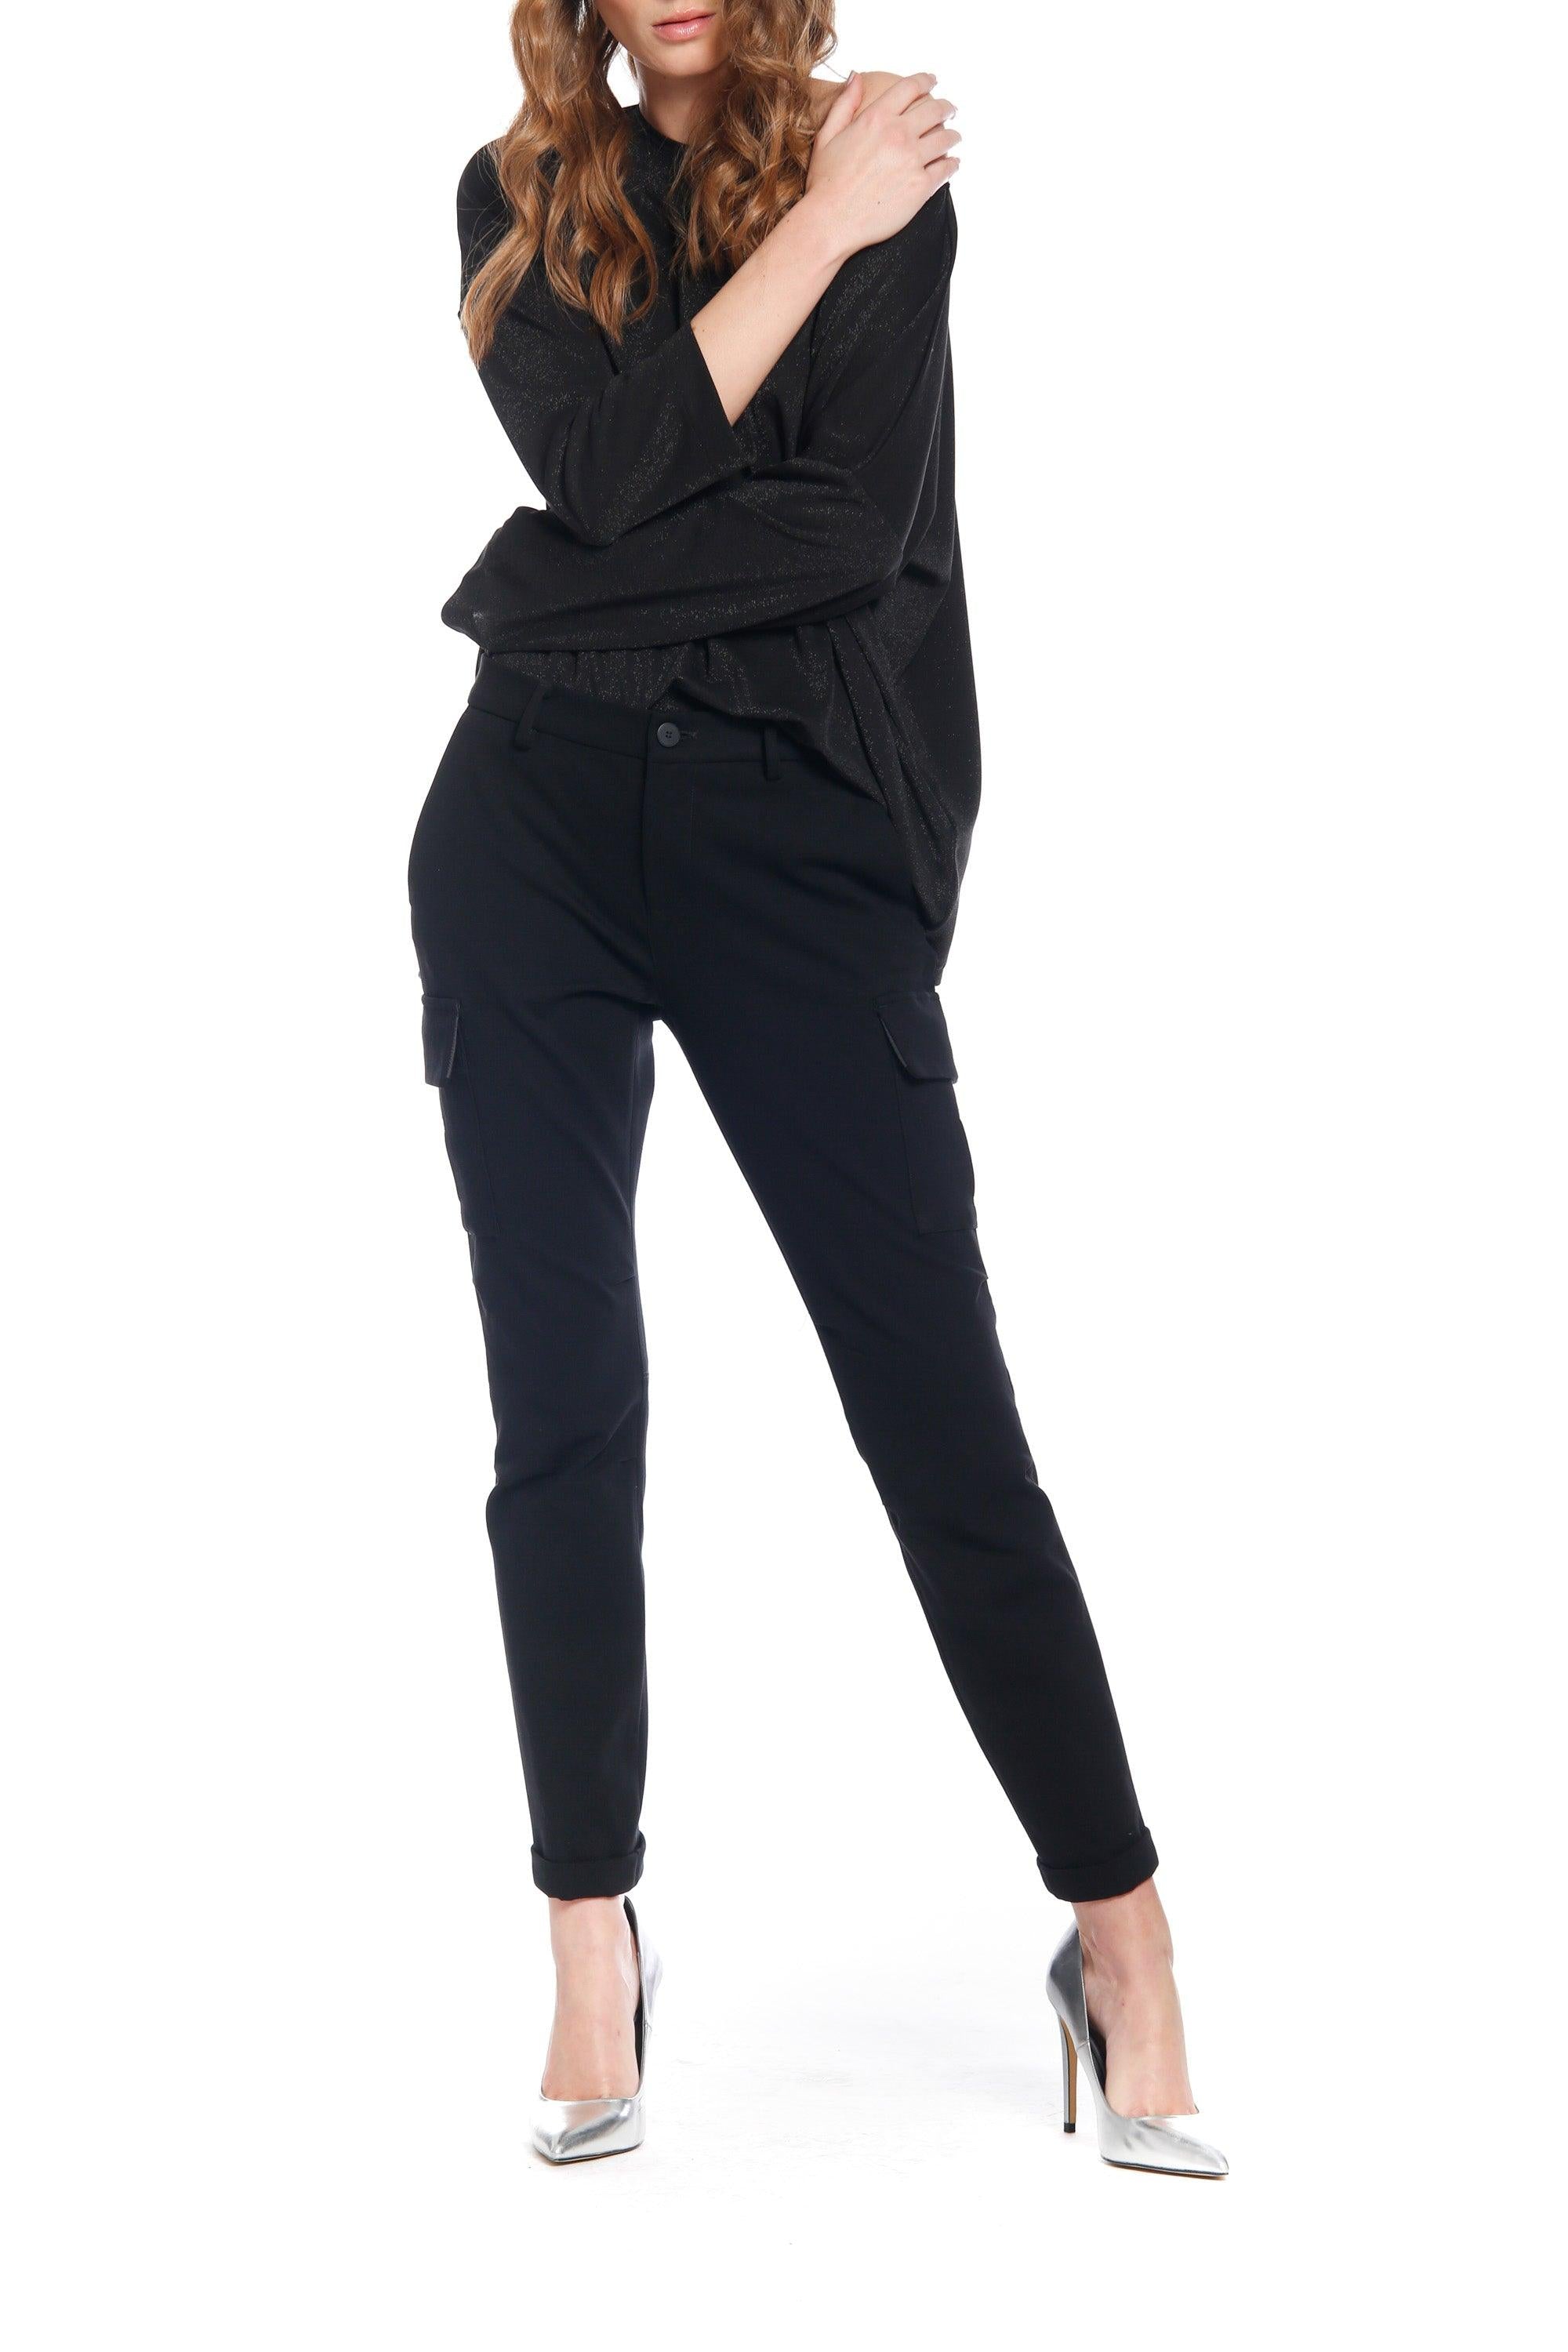 Bild 2 der Damen- Cargo  Hose aus Jersey Schwarz Modell Chile City von Mason’s